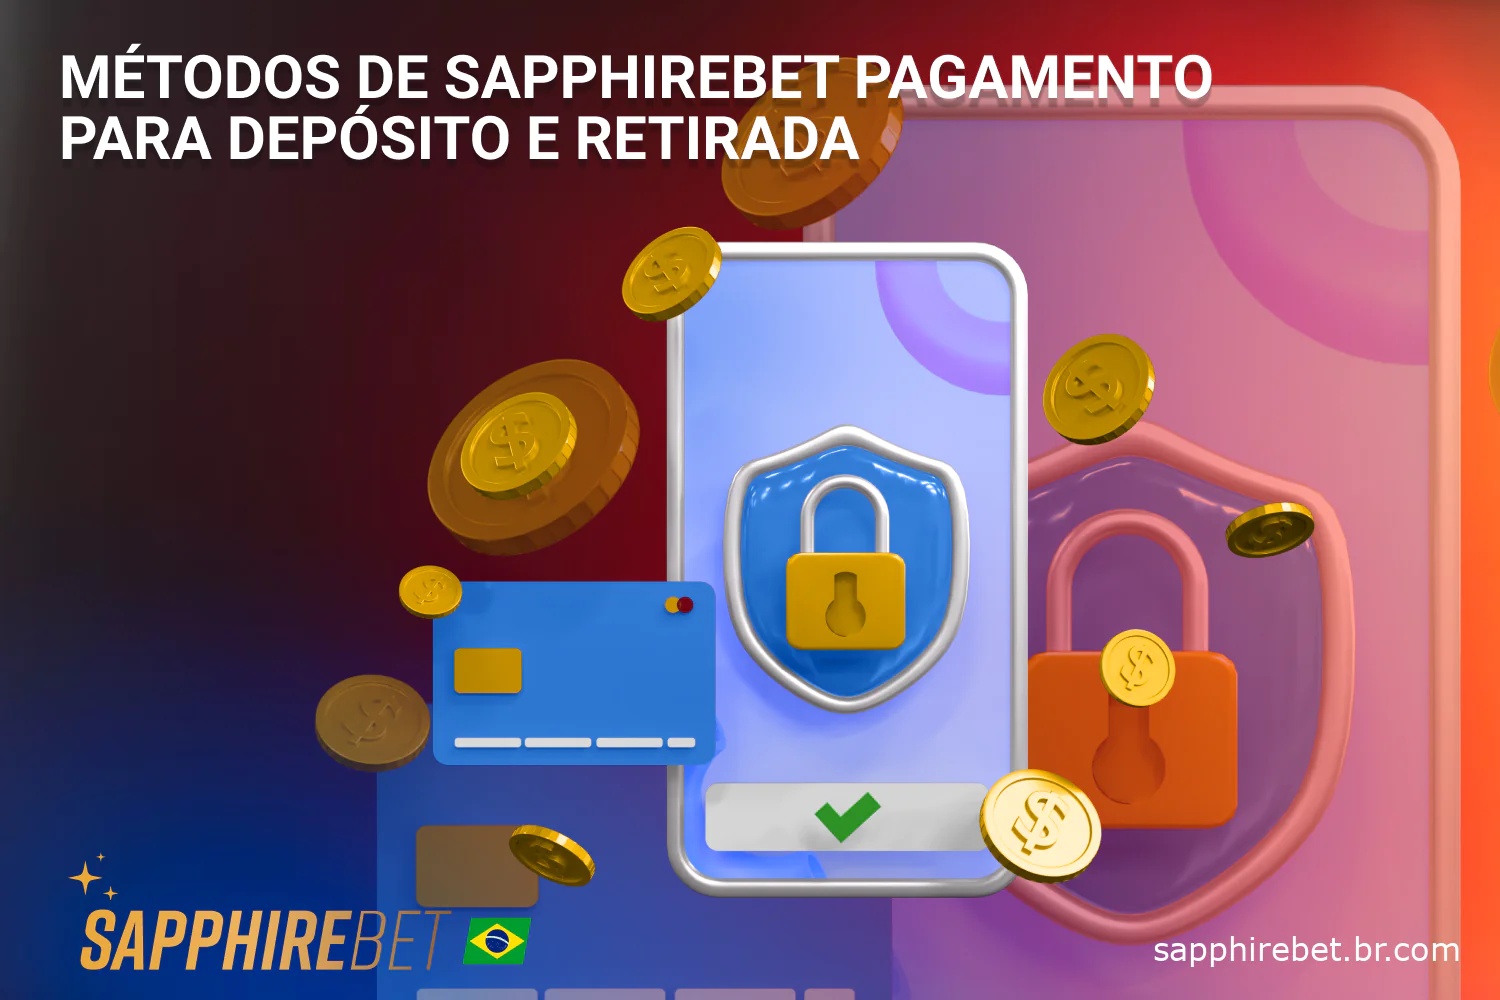 Você pode fazer um depósito e também sacar dinheiro da Sapphirebet no Brasil usando as opções de pagamento disponíveis